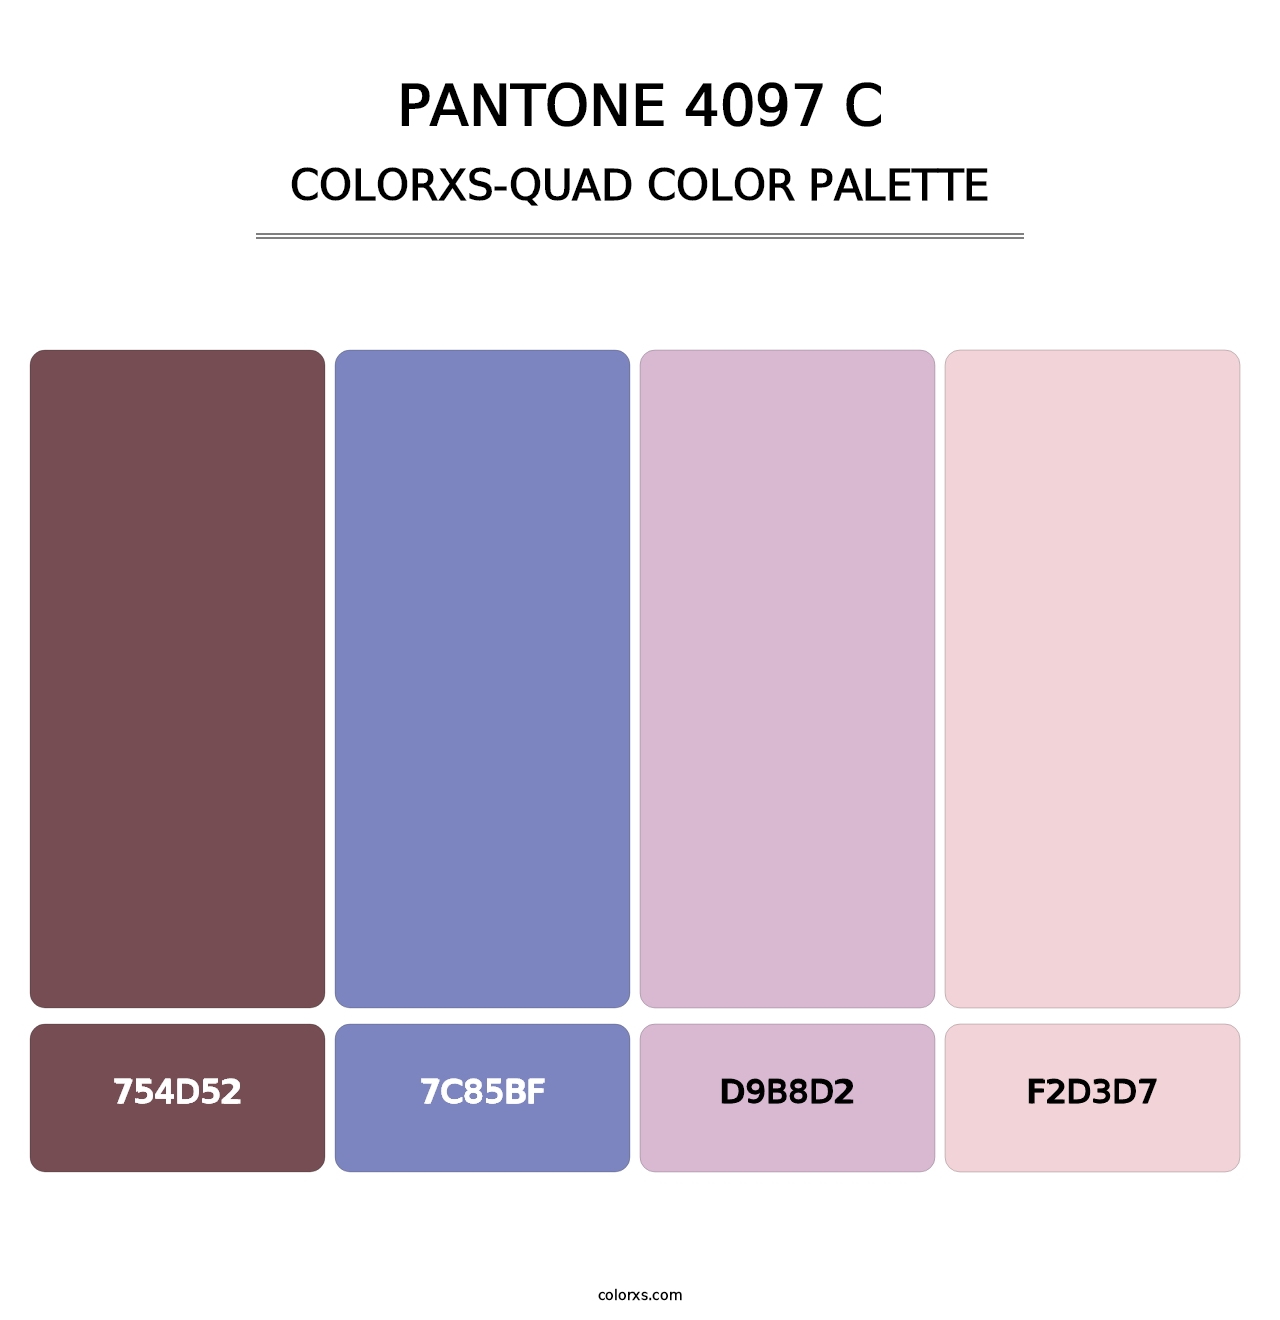 PANTONE 4097 C - Colorxs Quad Palette